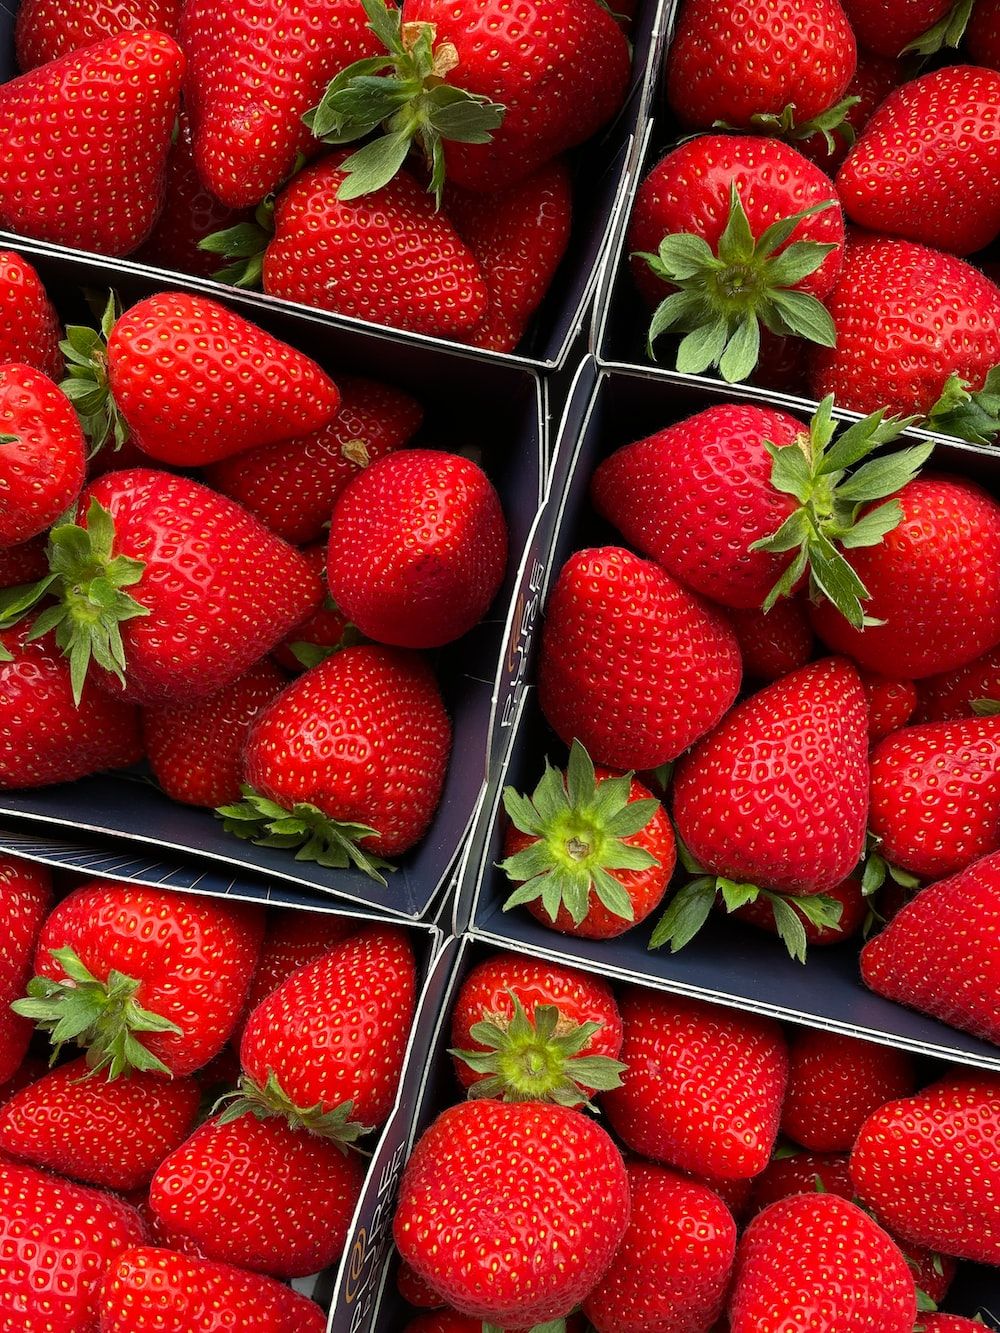  Erdbeeren Hintergrundbild 1000x1333. Strawberries Picture. Download Free Image